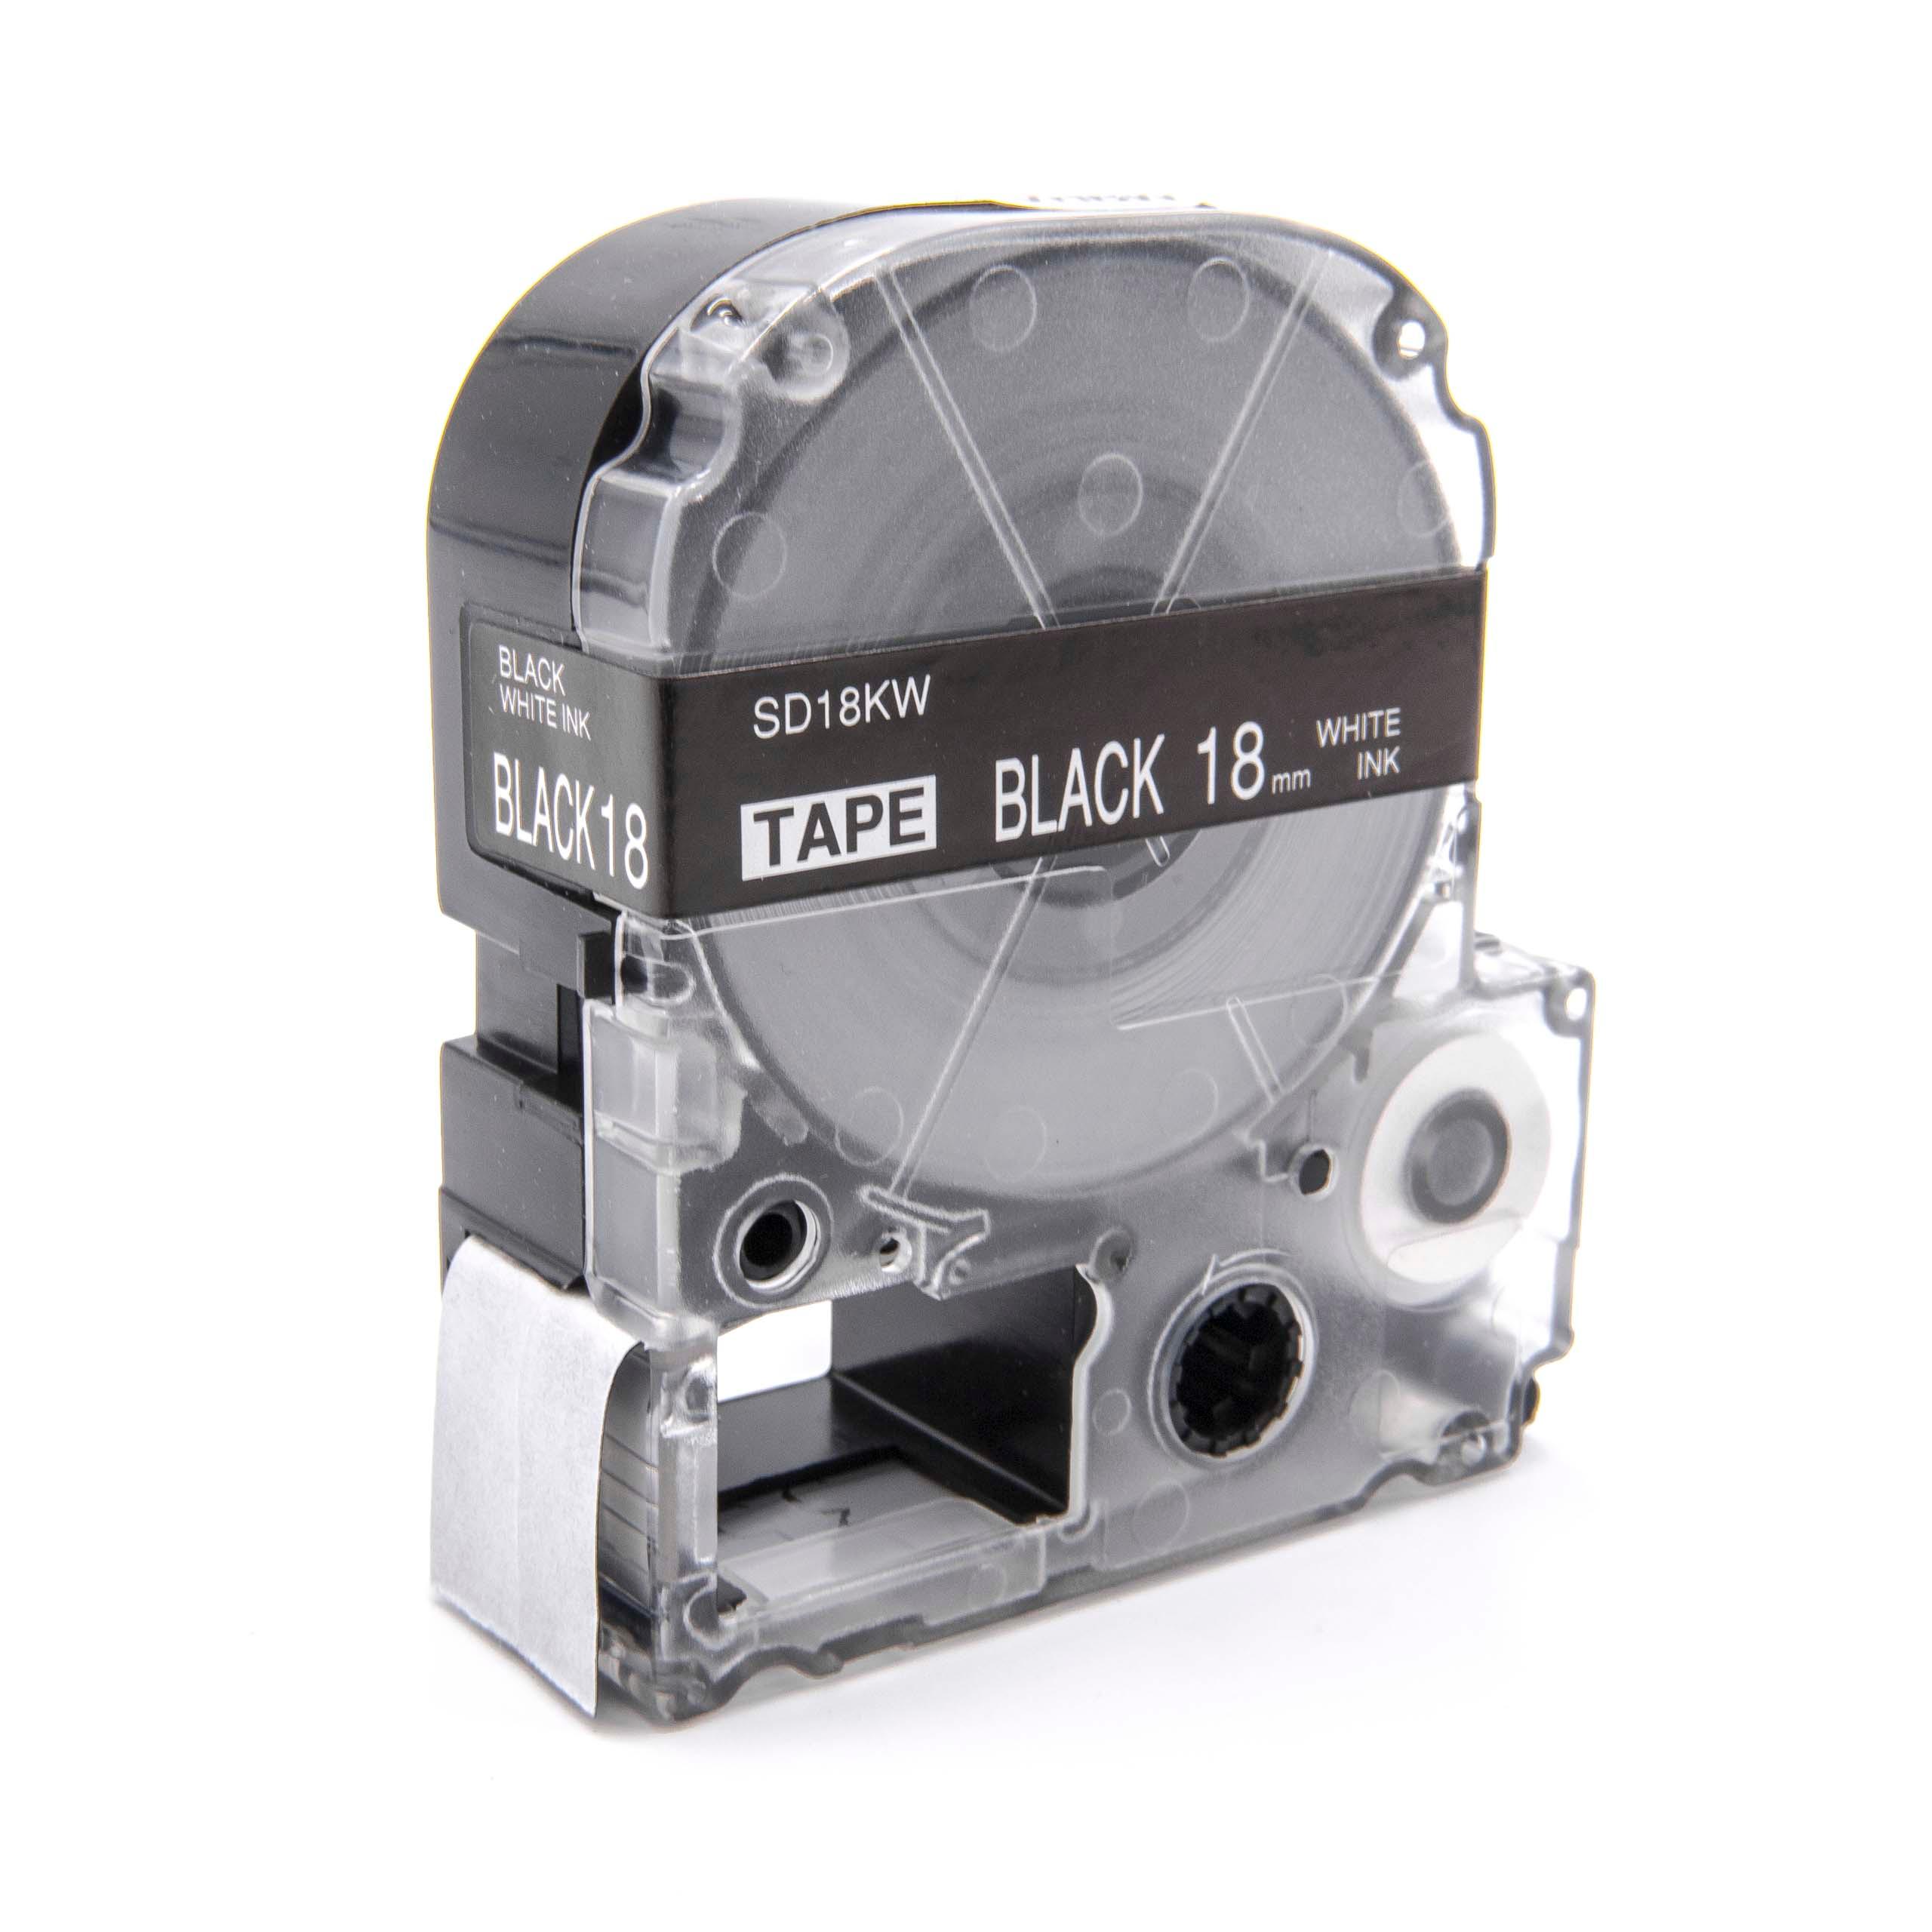 Cassetta nastro sostituisce Epson LC-5BWV per etichettatrice Epson 18mm bianco su nero